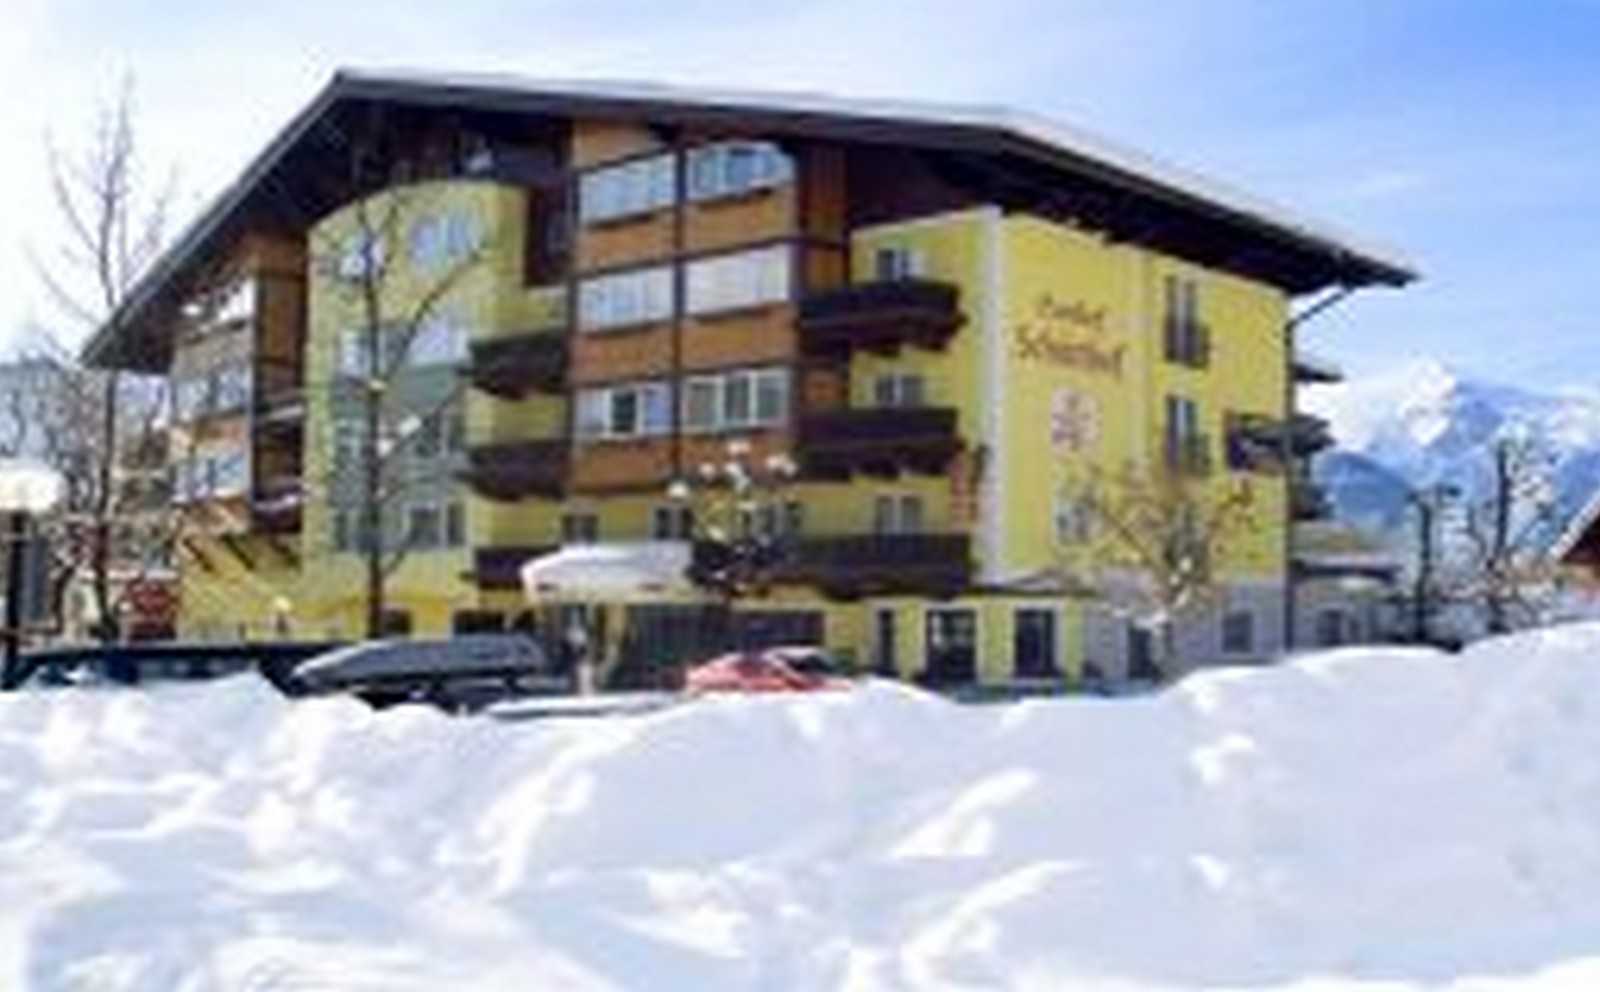 Hotel der Schütthof 